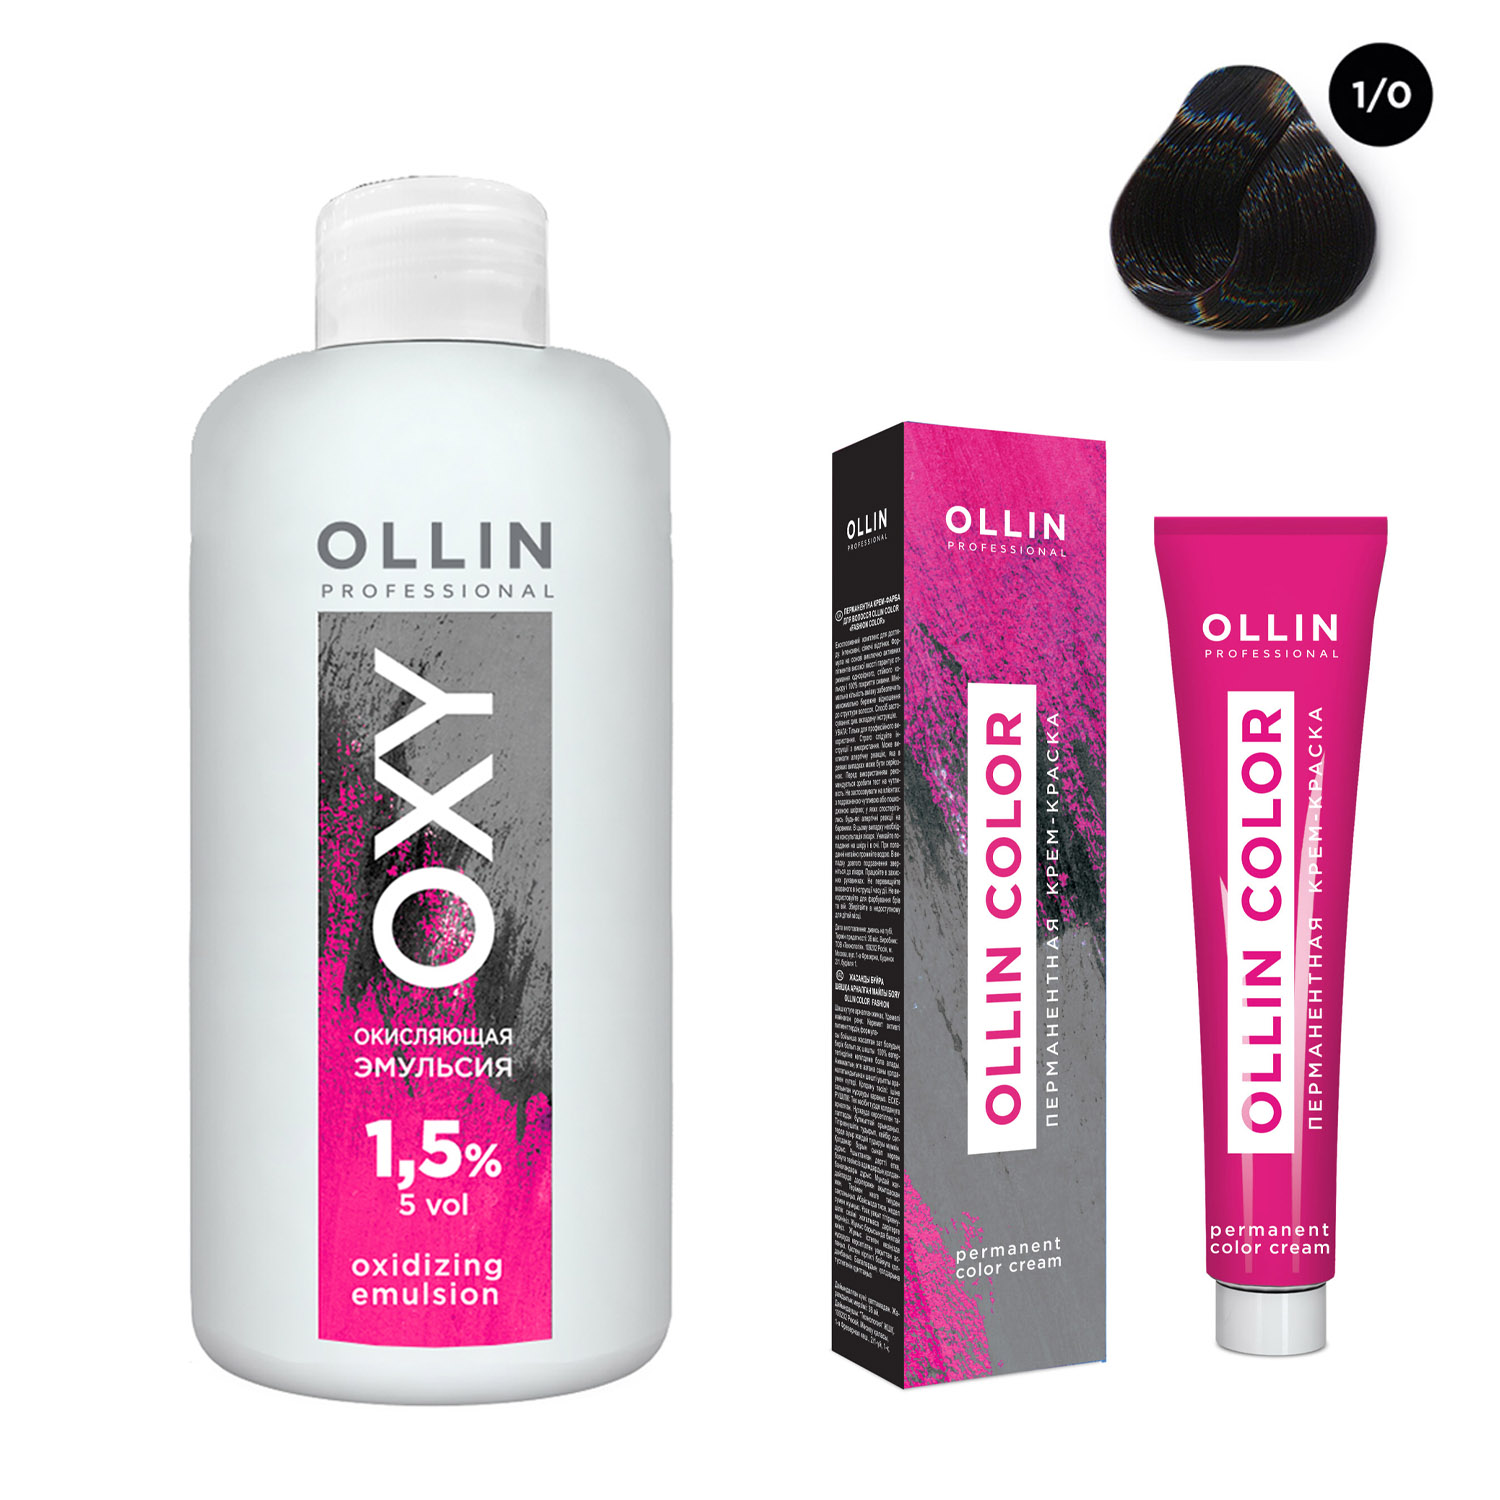 Ollin Professional Набор Перманентная крем-краска для волос Ollin Color оттенок 1/0 иссиня-черный 100 мл + Окисляющая эмульсия Oxy 1,5% 150 мл (Ollin Professional, Ollin Color) цена и фото